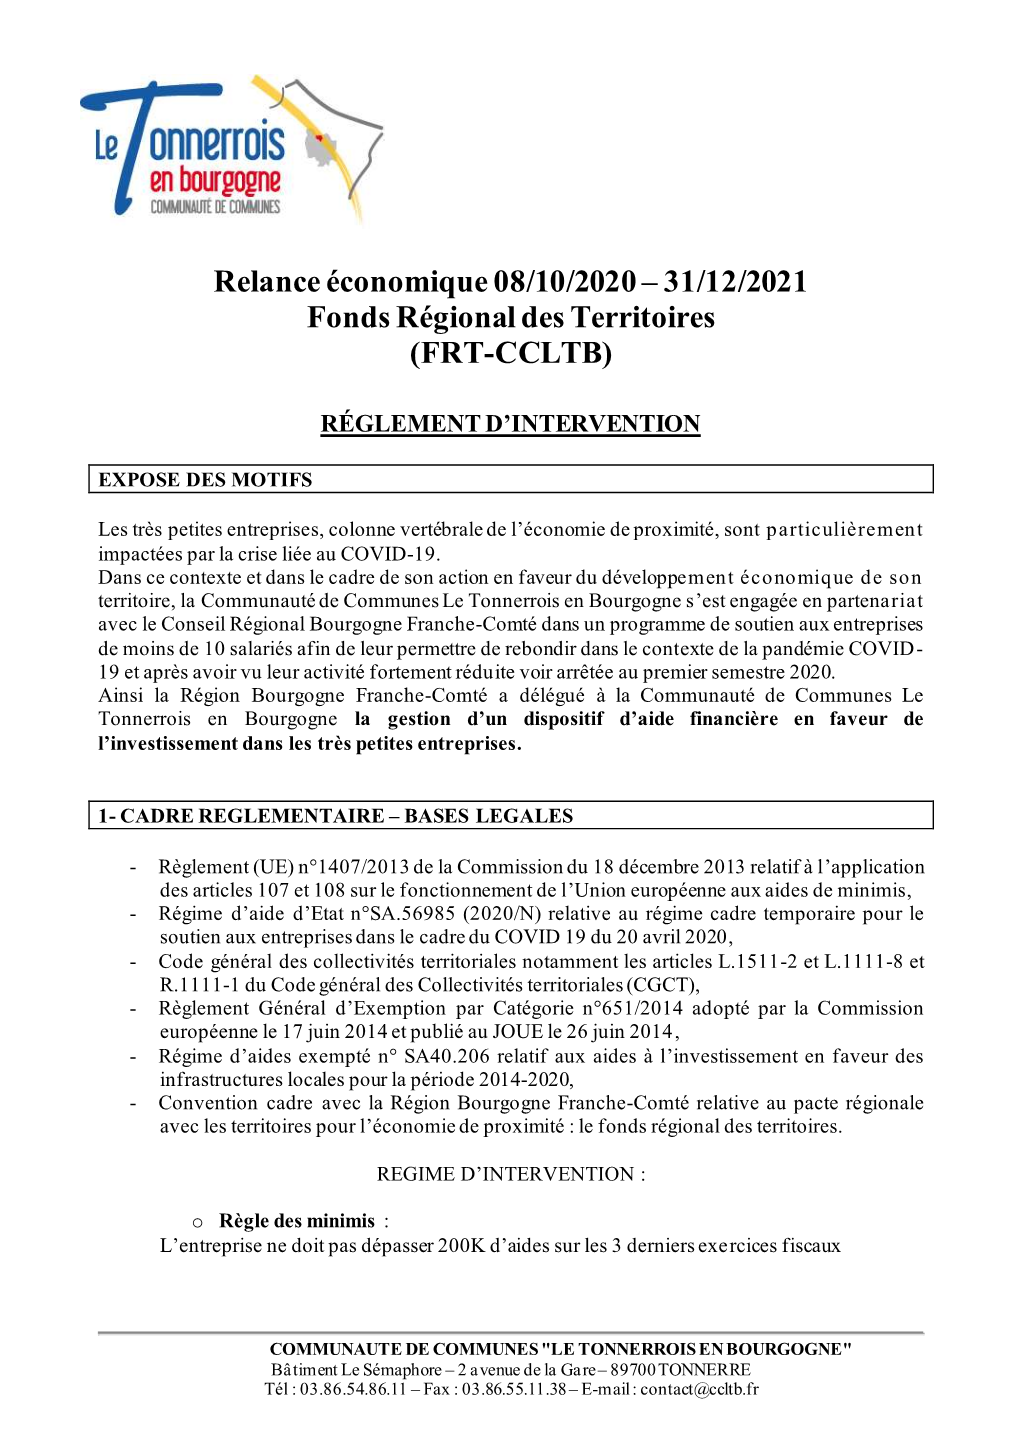 31/12/2021 Fonds Régional Des Territoires (FRT-CCLTB)